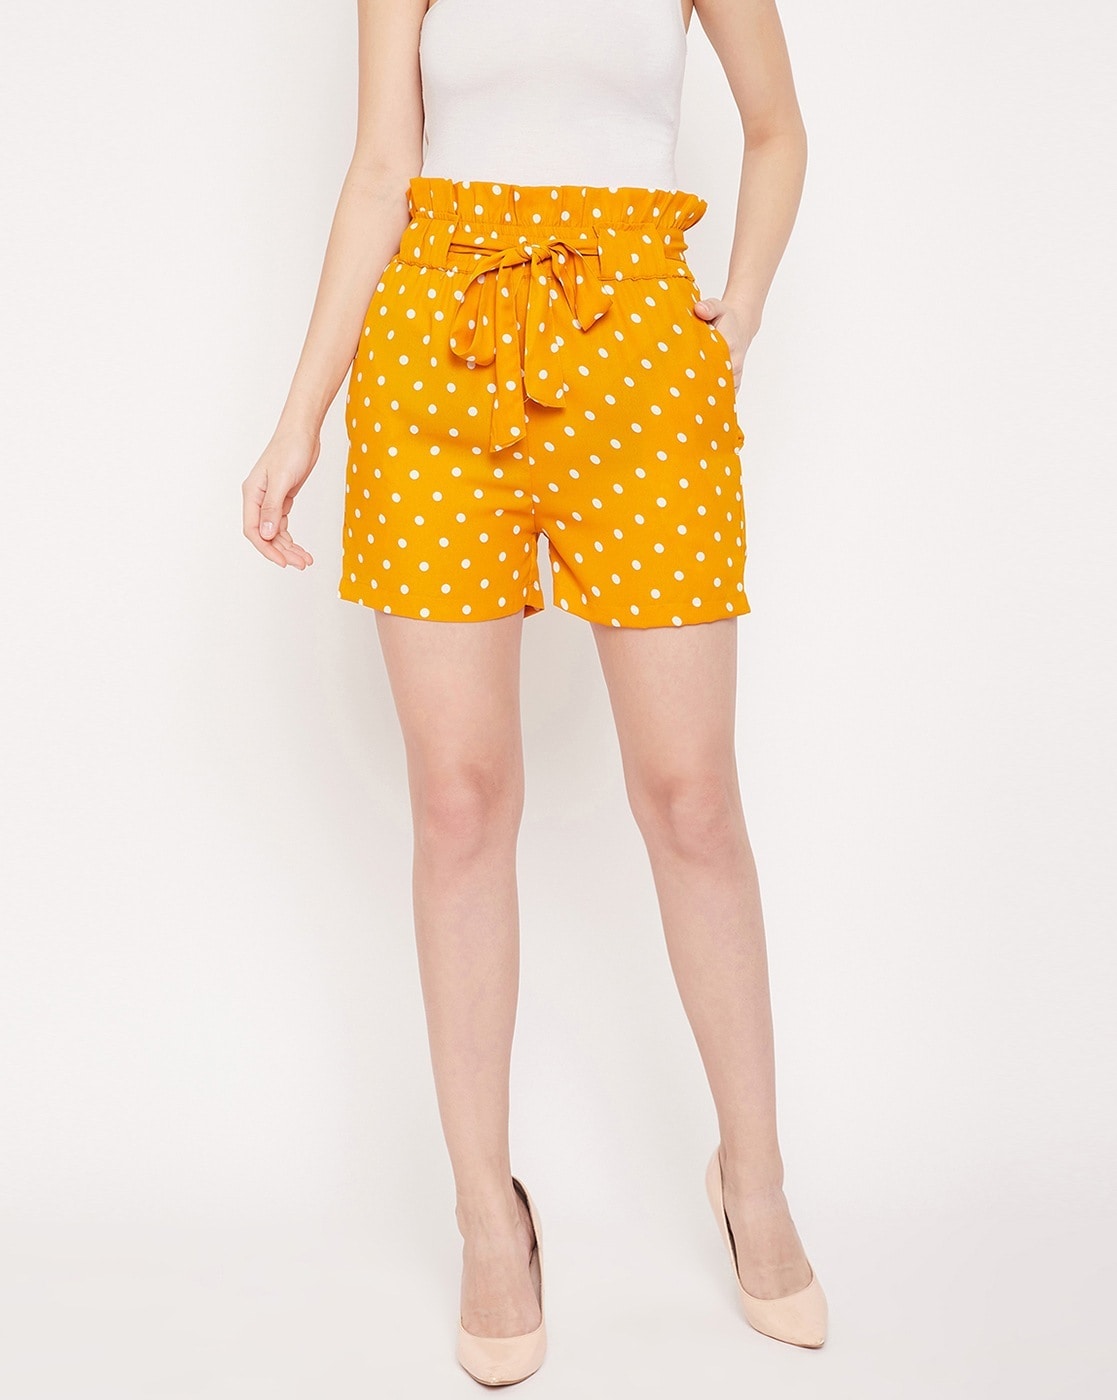 HIGH WAIST MINI SHORTS Yellow Polka Dots | Bikram Yoga Shorts